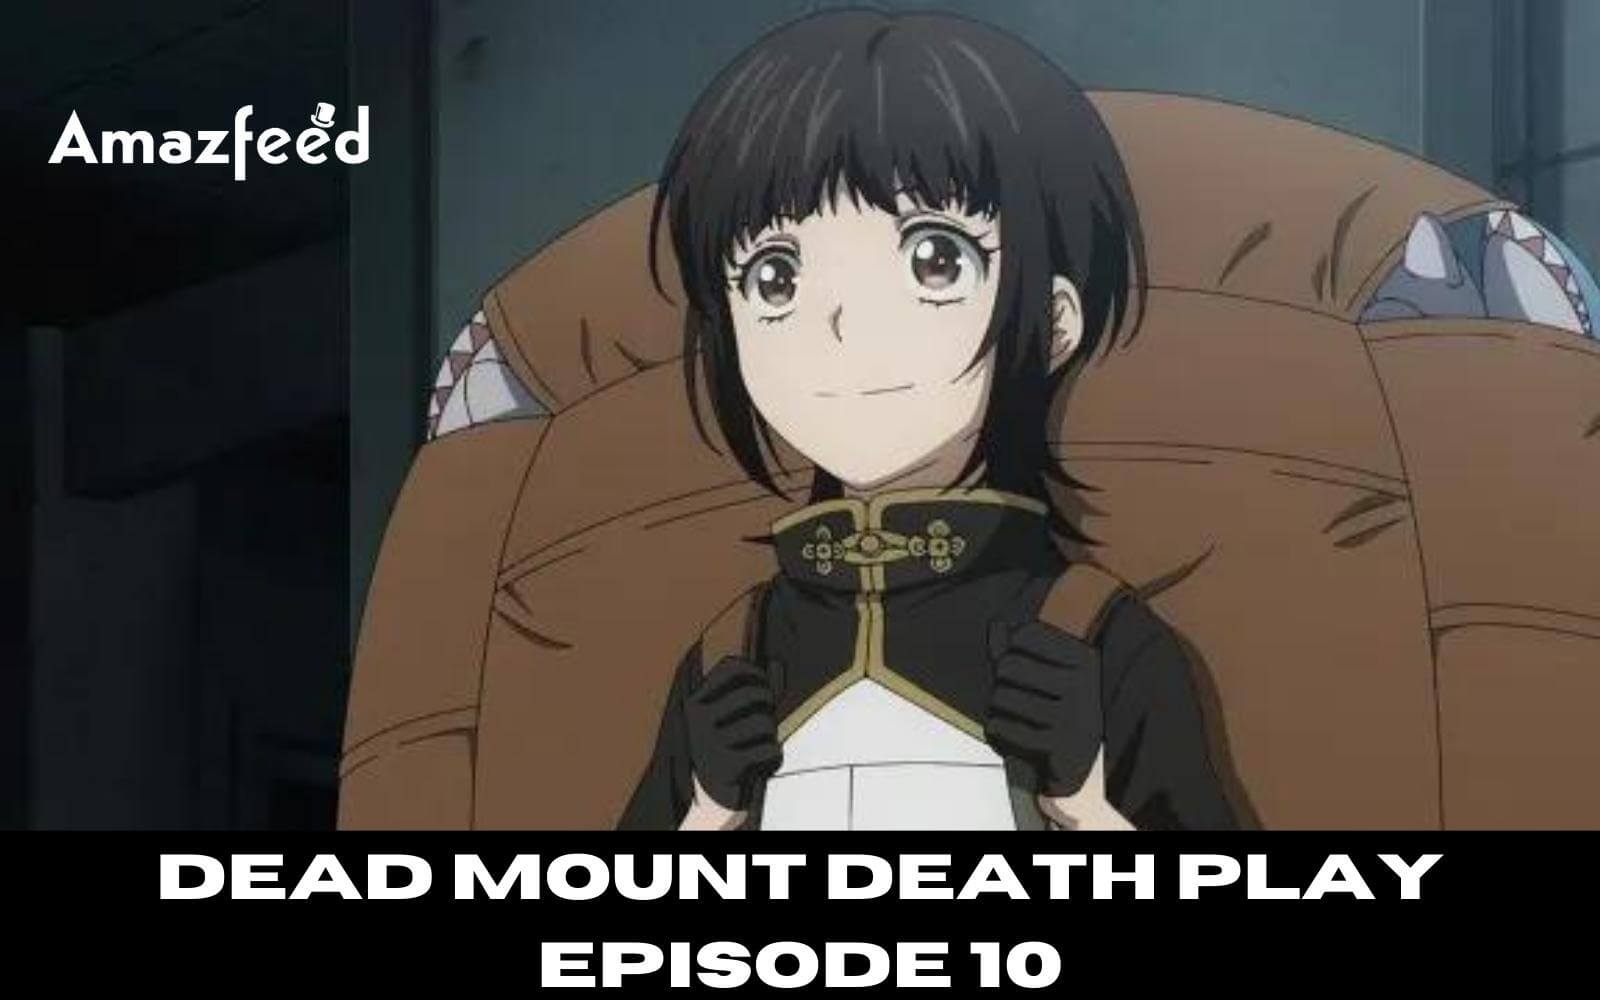 Dead Mount Death Play Season 1 Episode 18 Release Date & Time on Crunchyroll